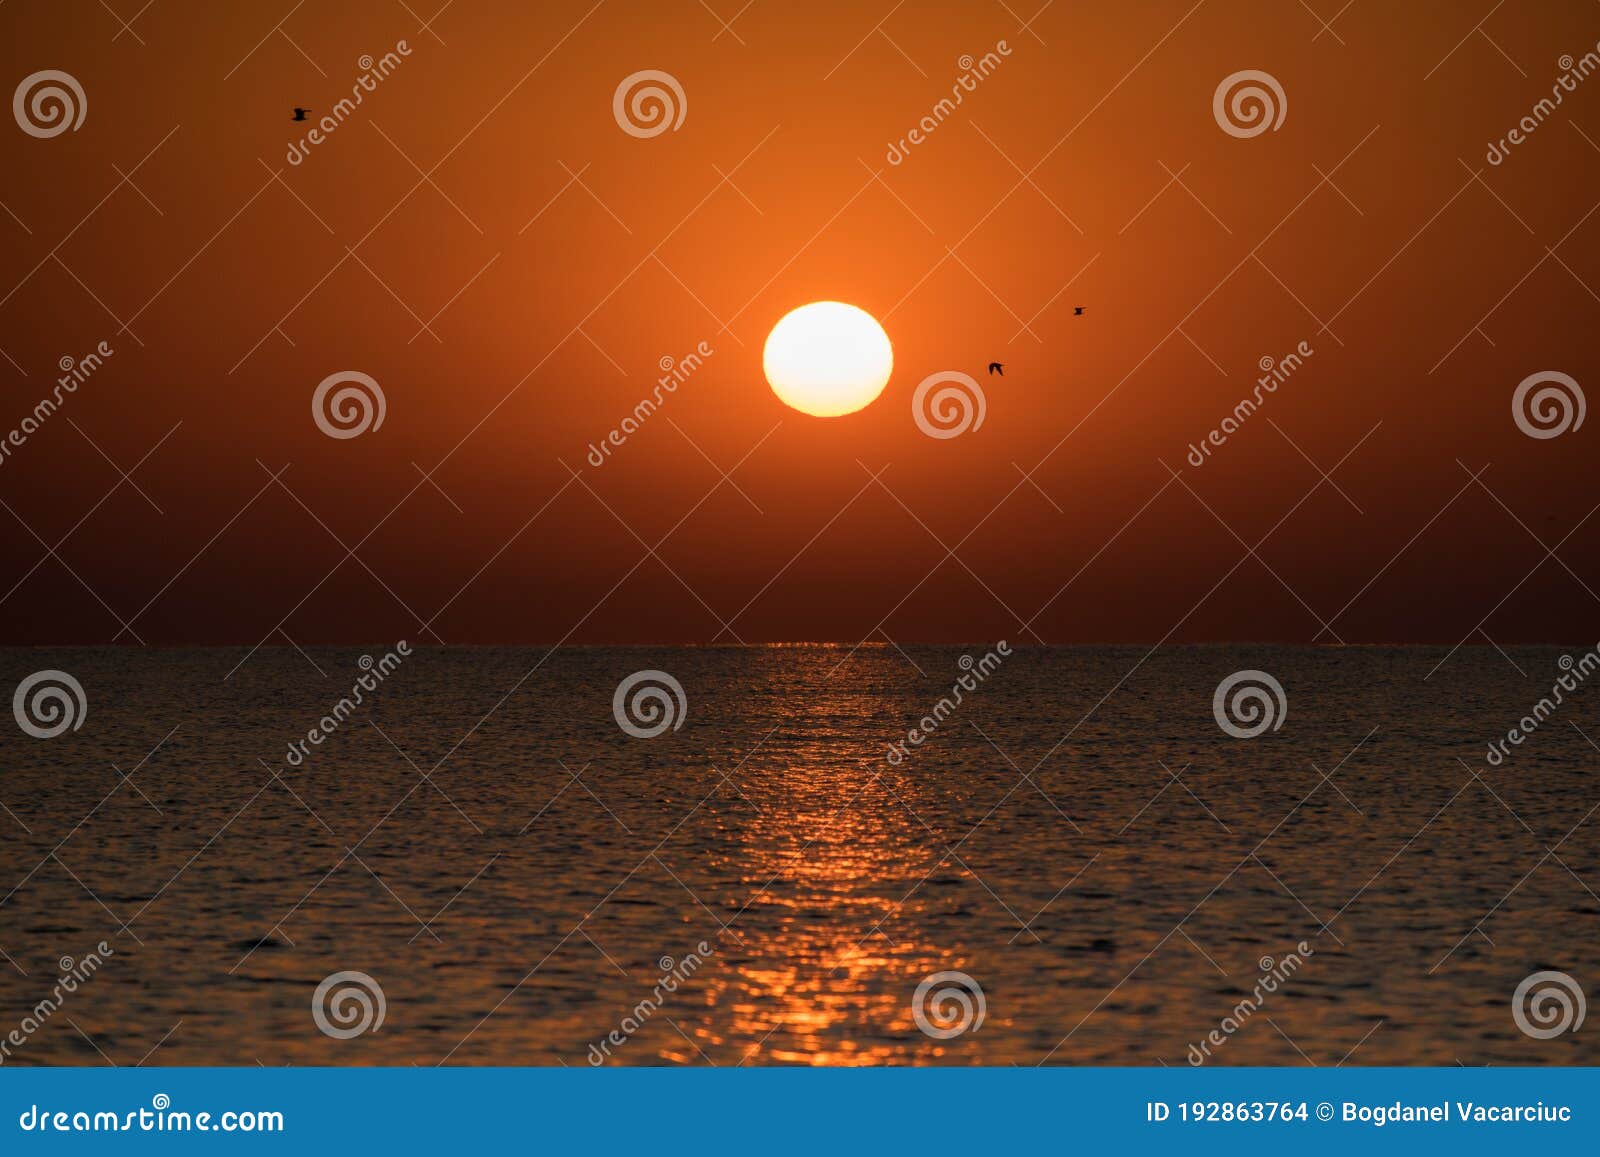 Море Солнце Фото Красивые